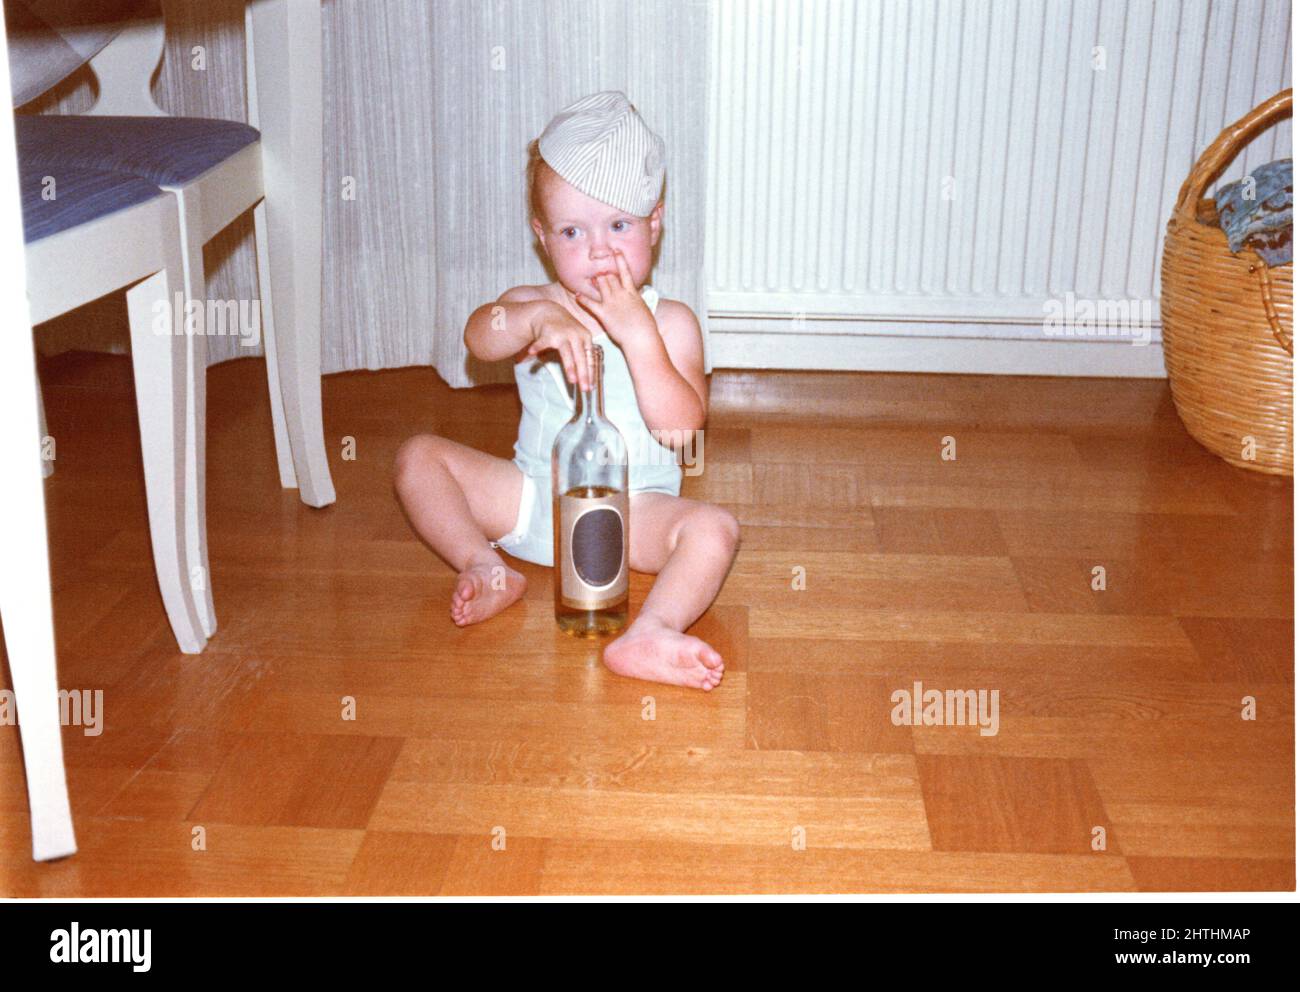 Foto des kleinen Kindes aus den 1960er Jahren, das mit einer Glasflasche auf einem Holzboden spielt, Schweden. Stockfoto